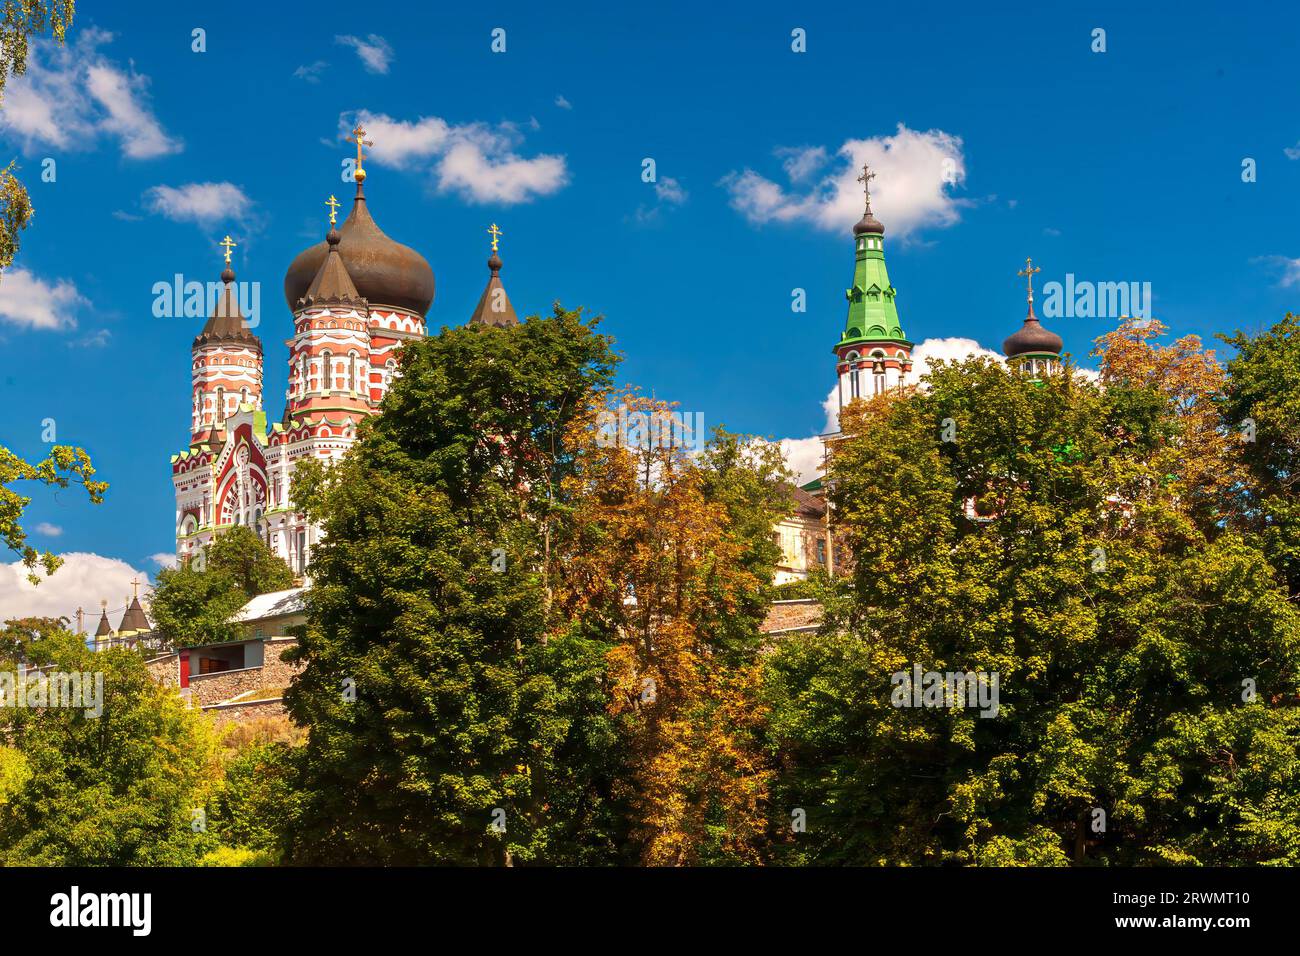 St. Panteleimon Monastery in Kyiv. Stock Photo